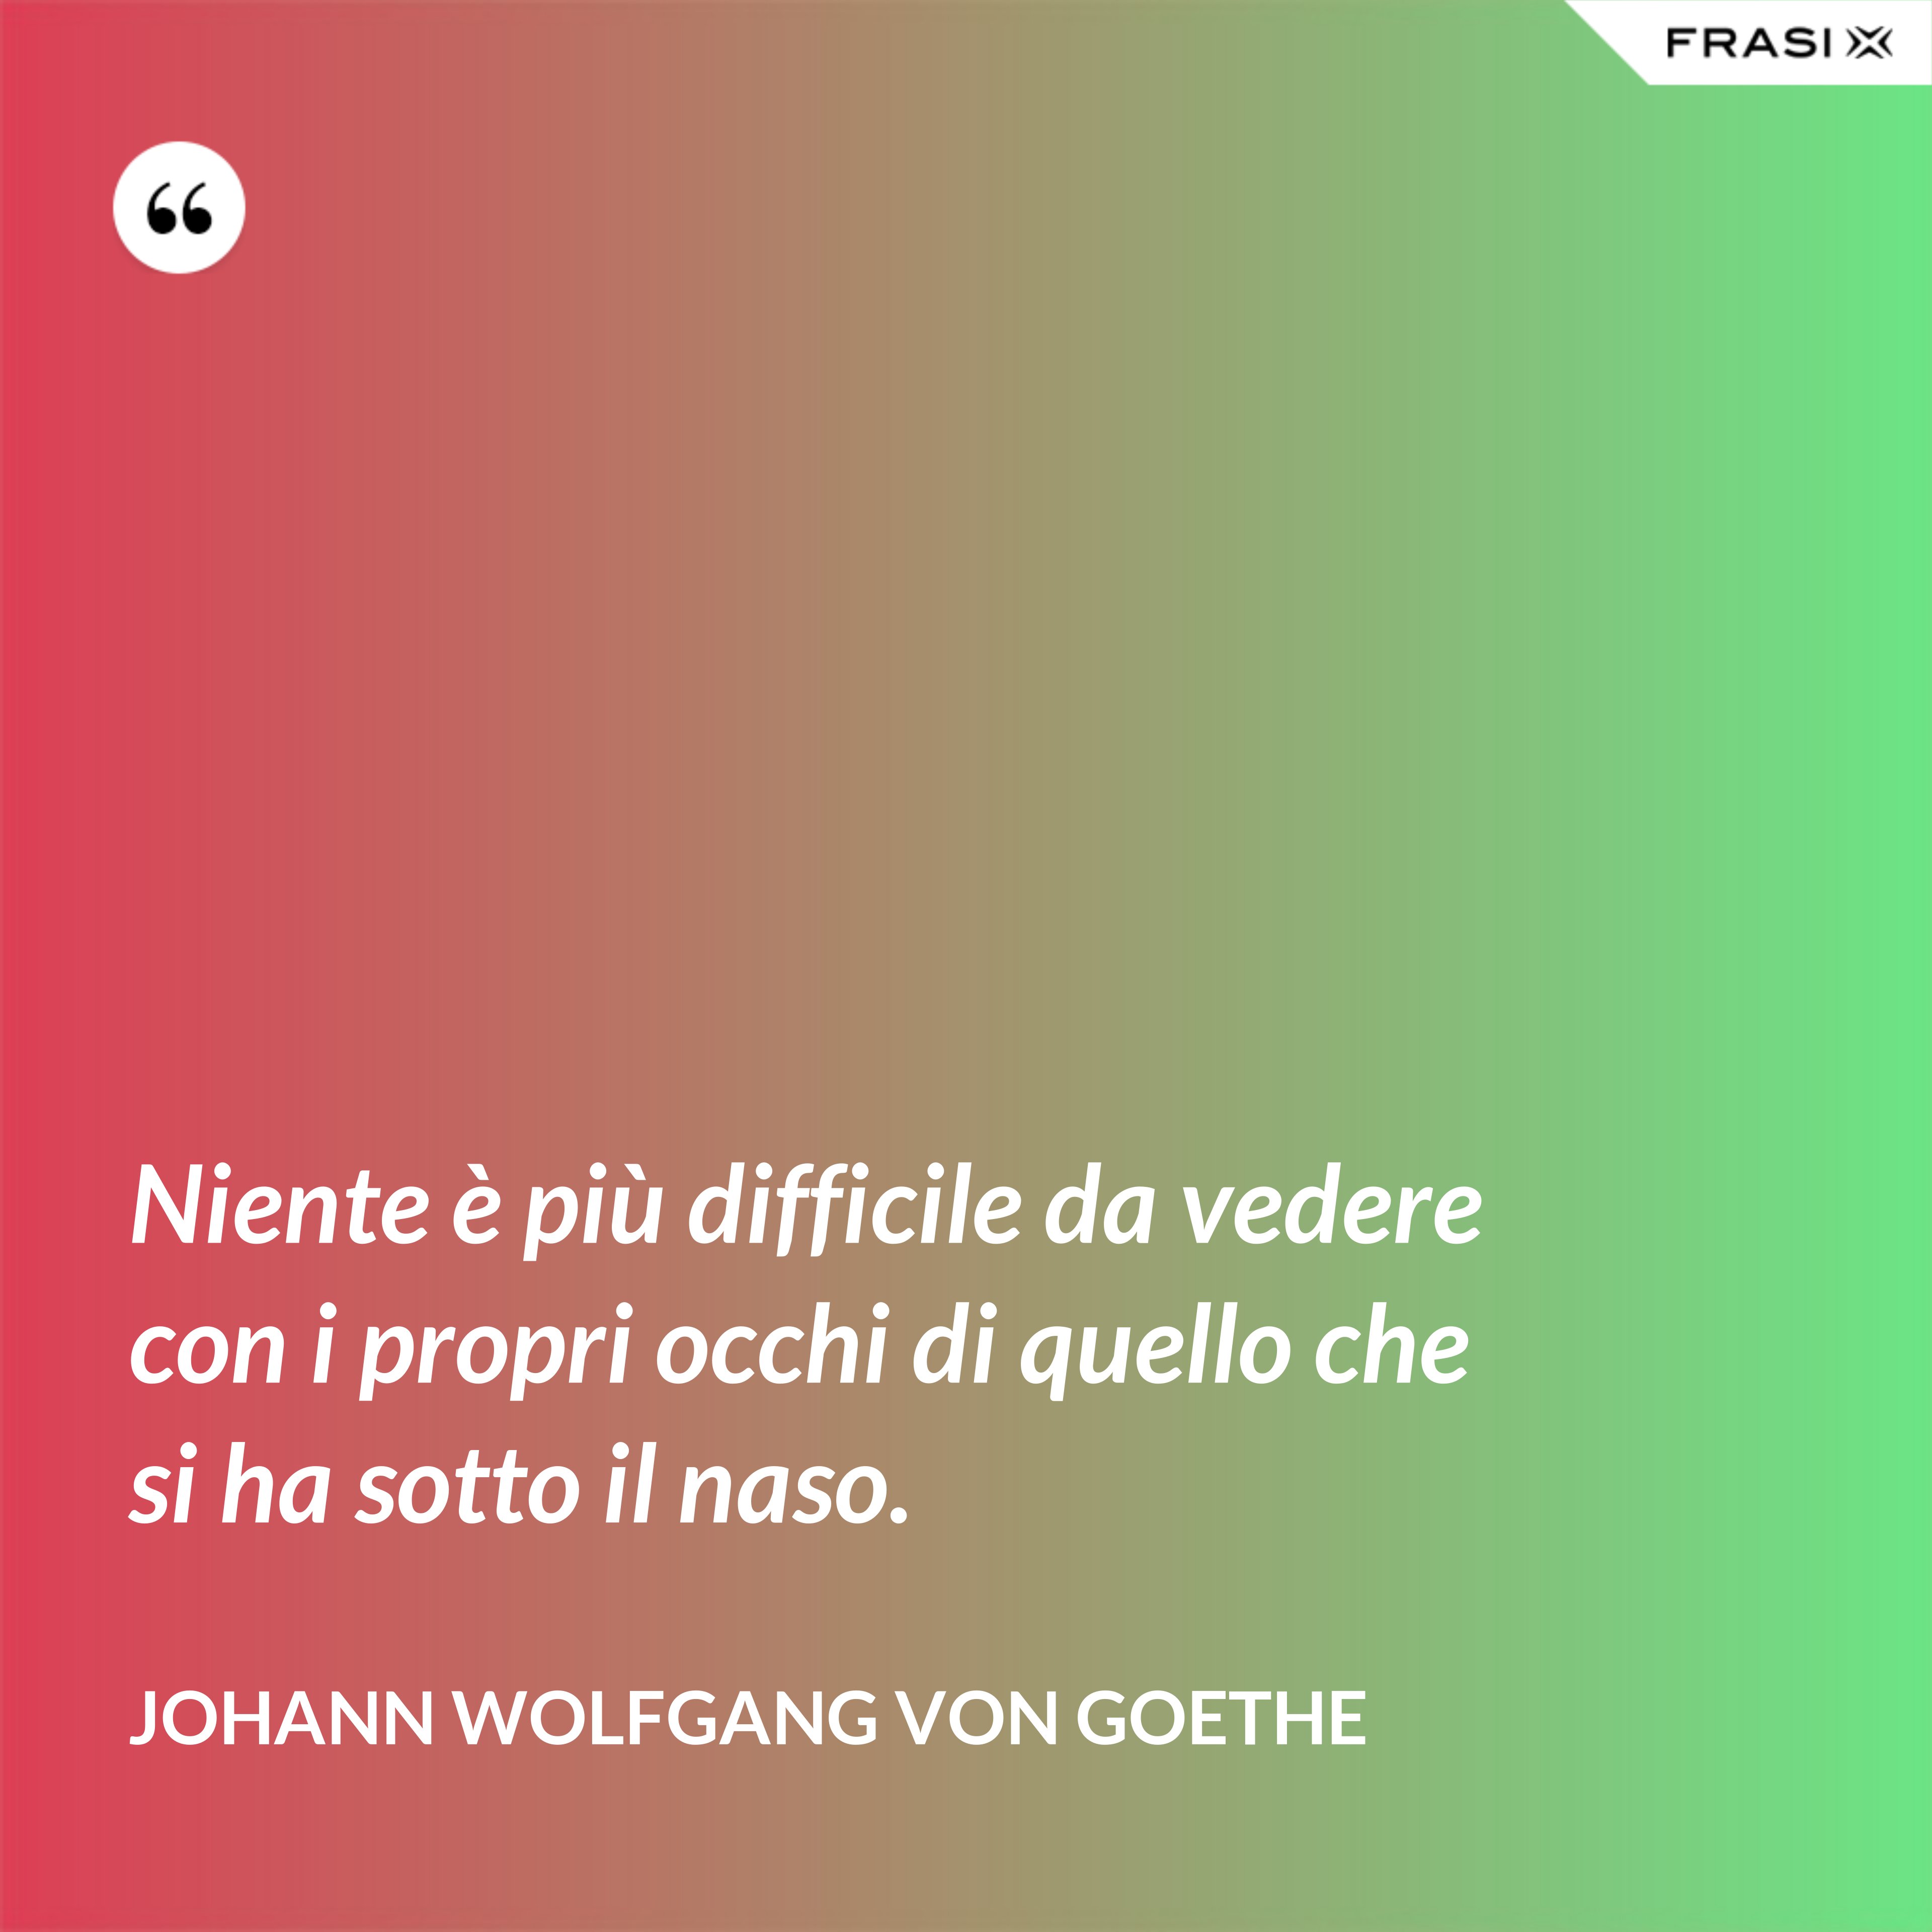 Niente è più difficile da vedere con i propri occhi di quello che si ha sotto il naso. - Johann Wolfgang von Goethe